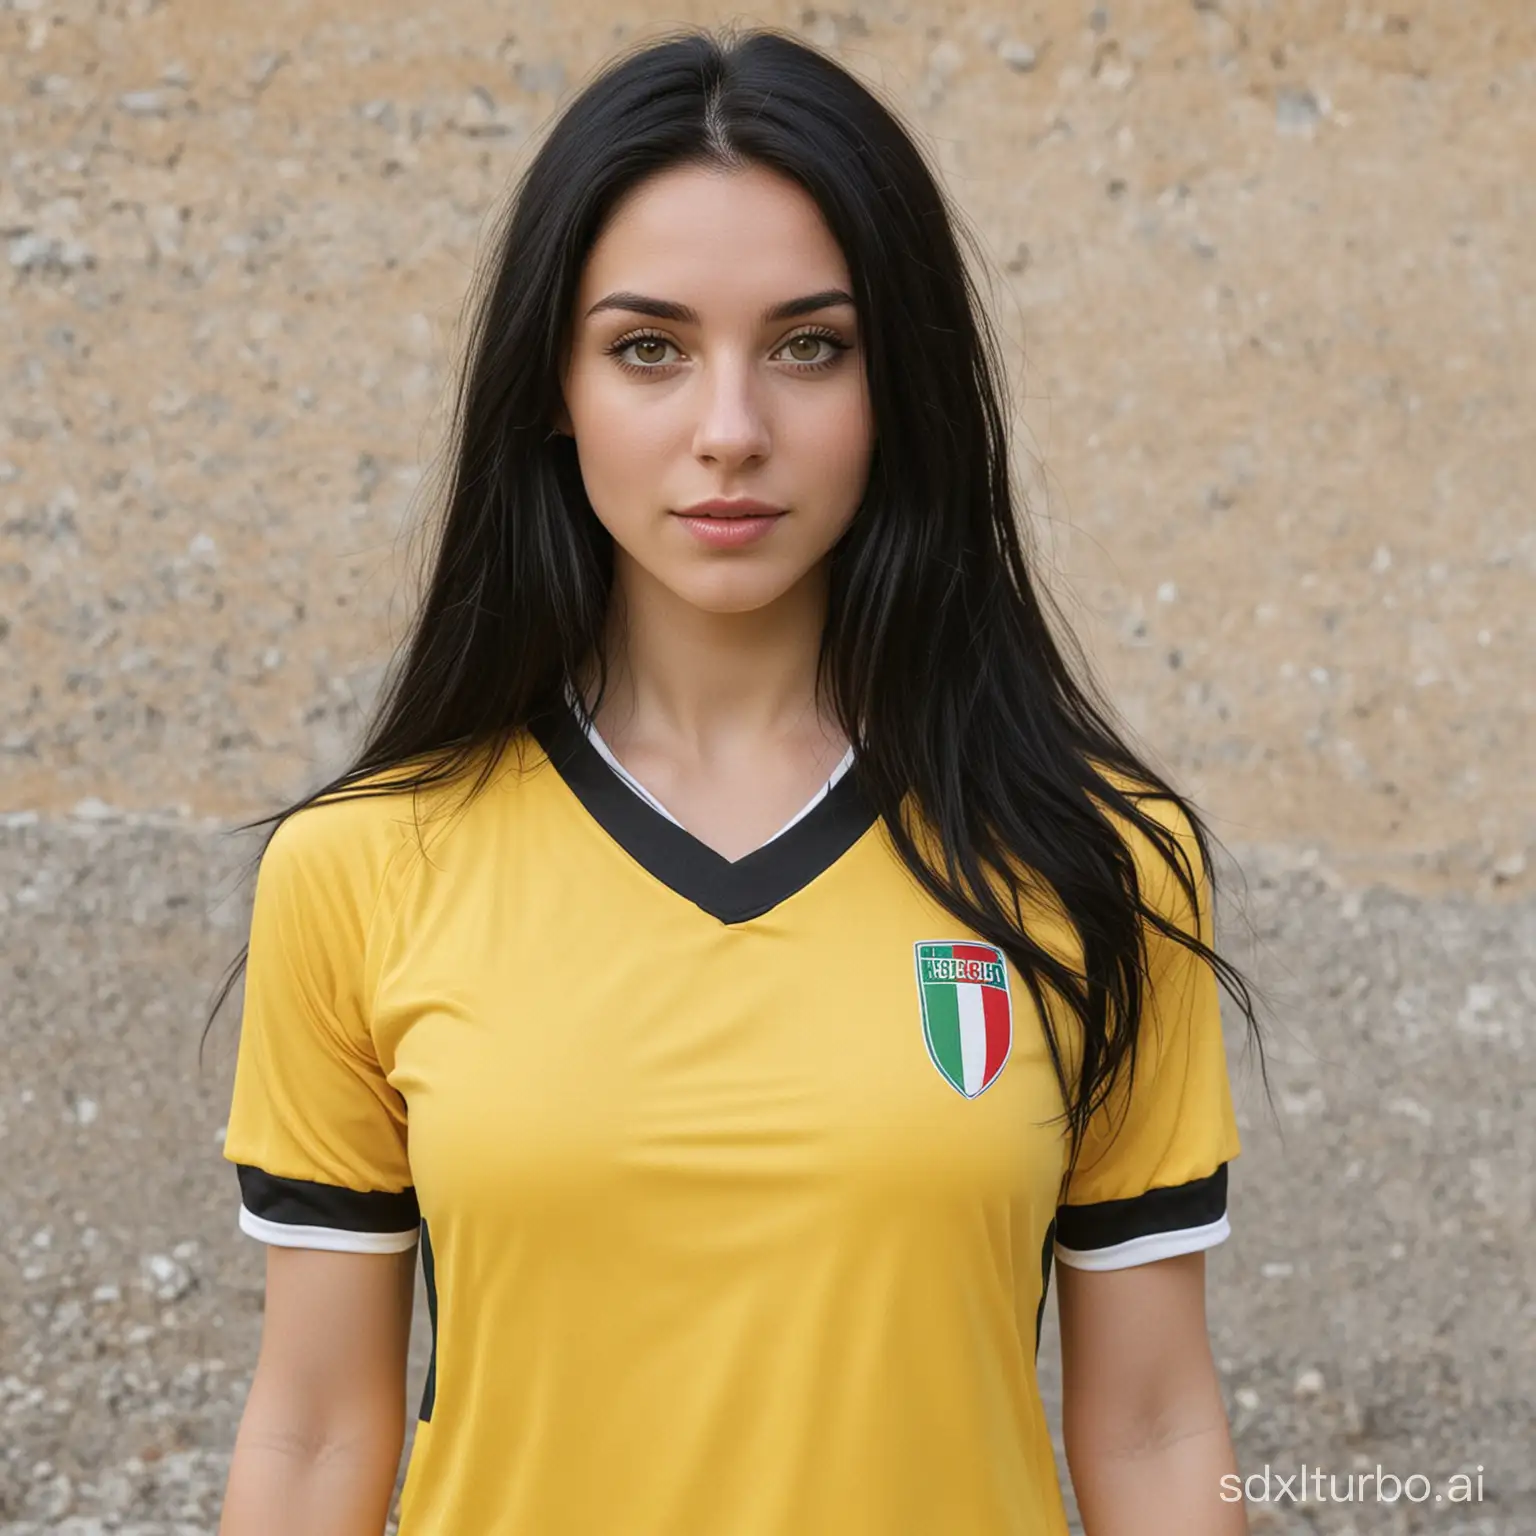 girl long black hair, pale white skin, Italian, yellow soccer shirt